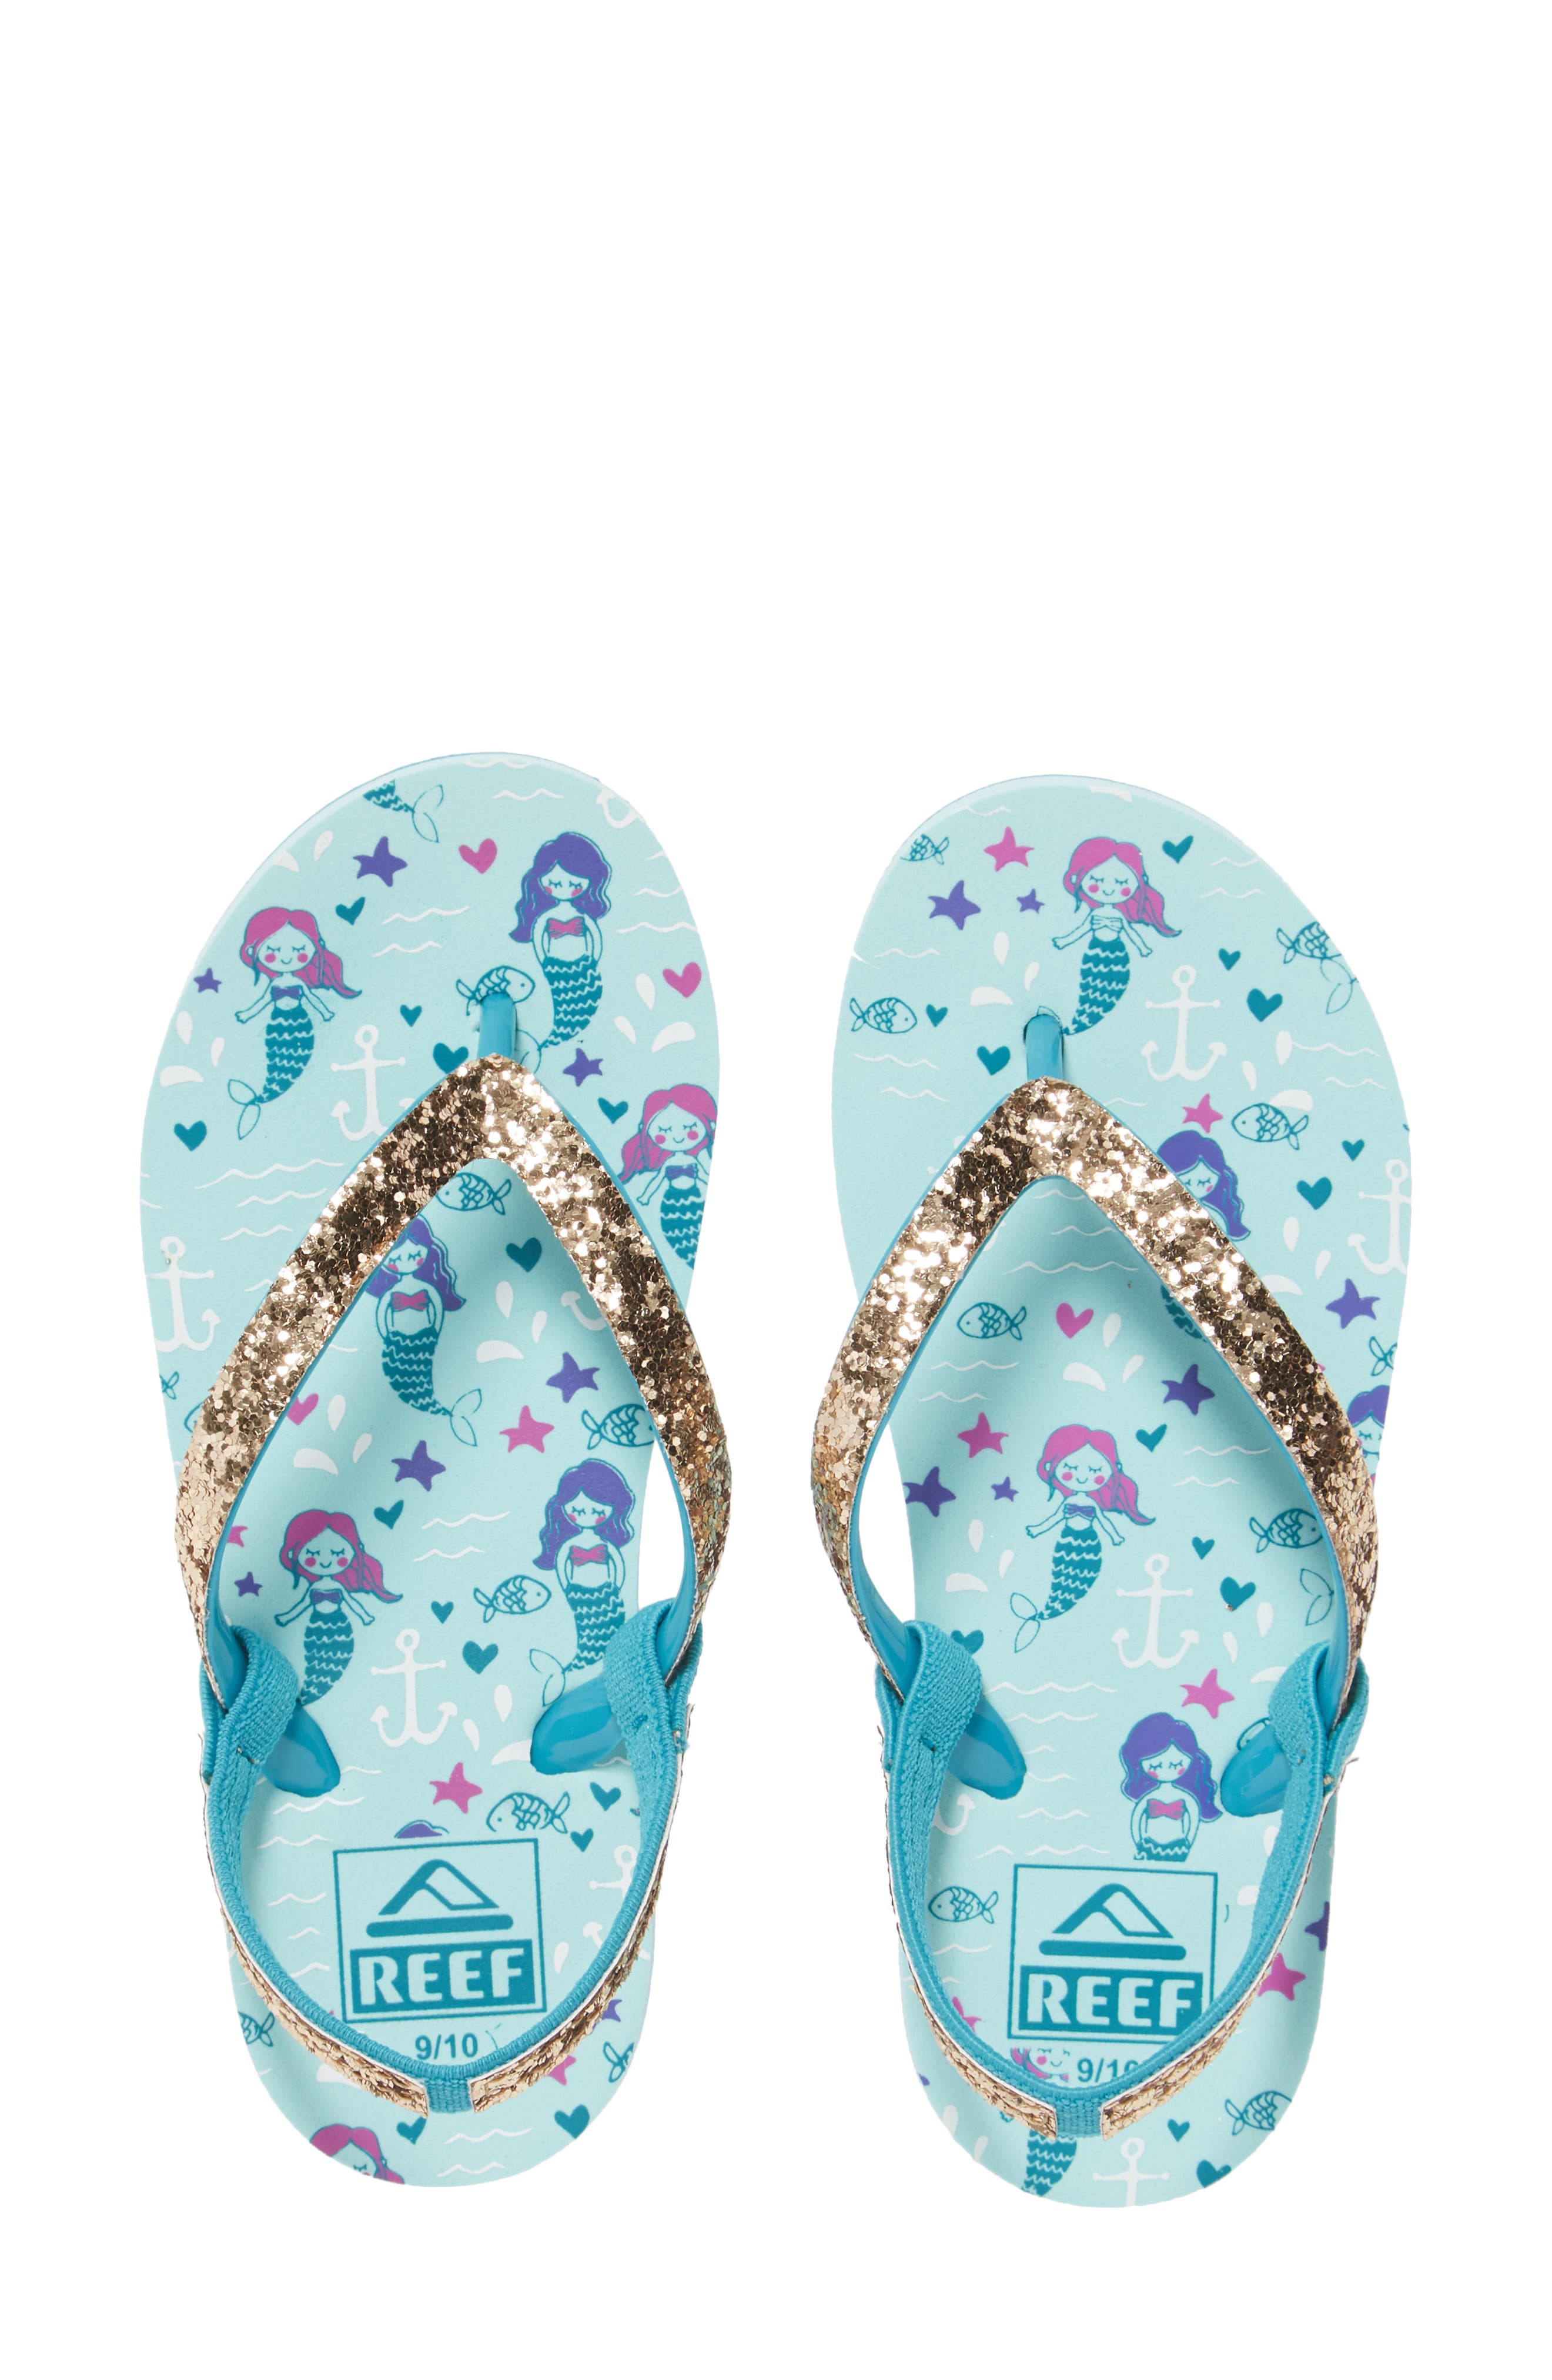 Sizes 7,8,9 Women's Reef Escape Prints Sandals/Flip-Flops Tan Palm Stripe